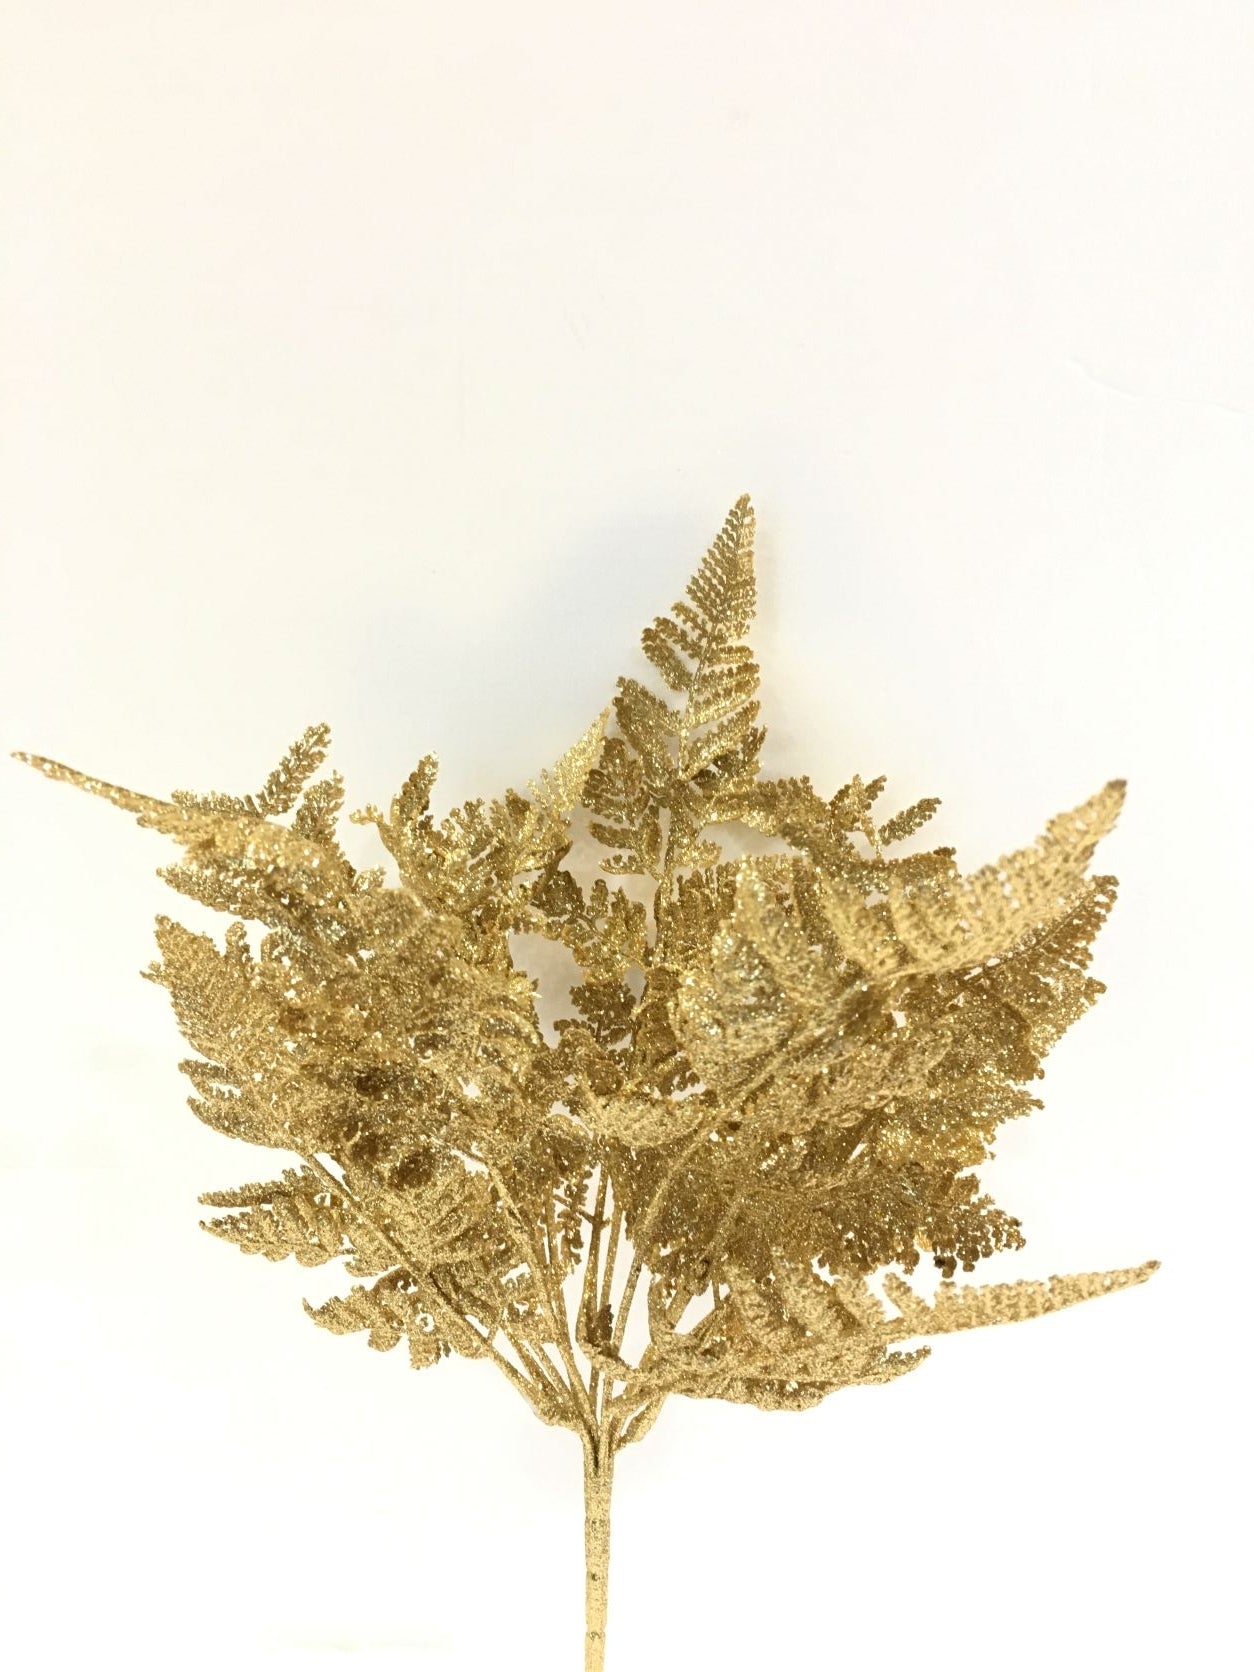 Cespuglio di Felce ornamentale artificiale di colore oro glitter. Dimensioni: cm 46 h. In negozio e online su tuttochic.it